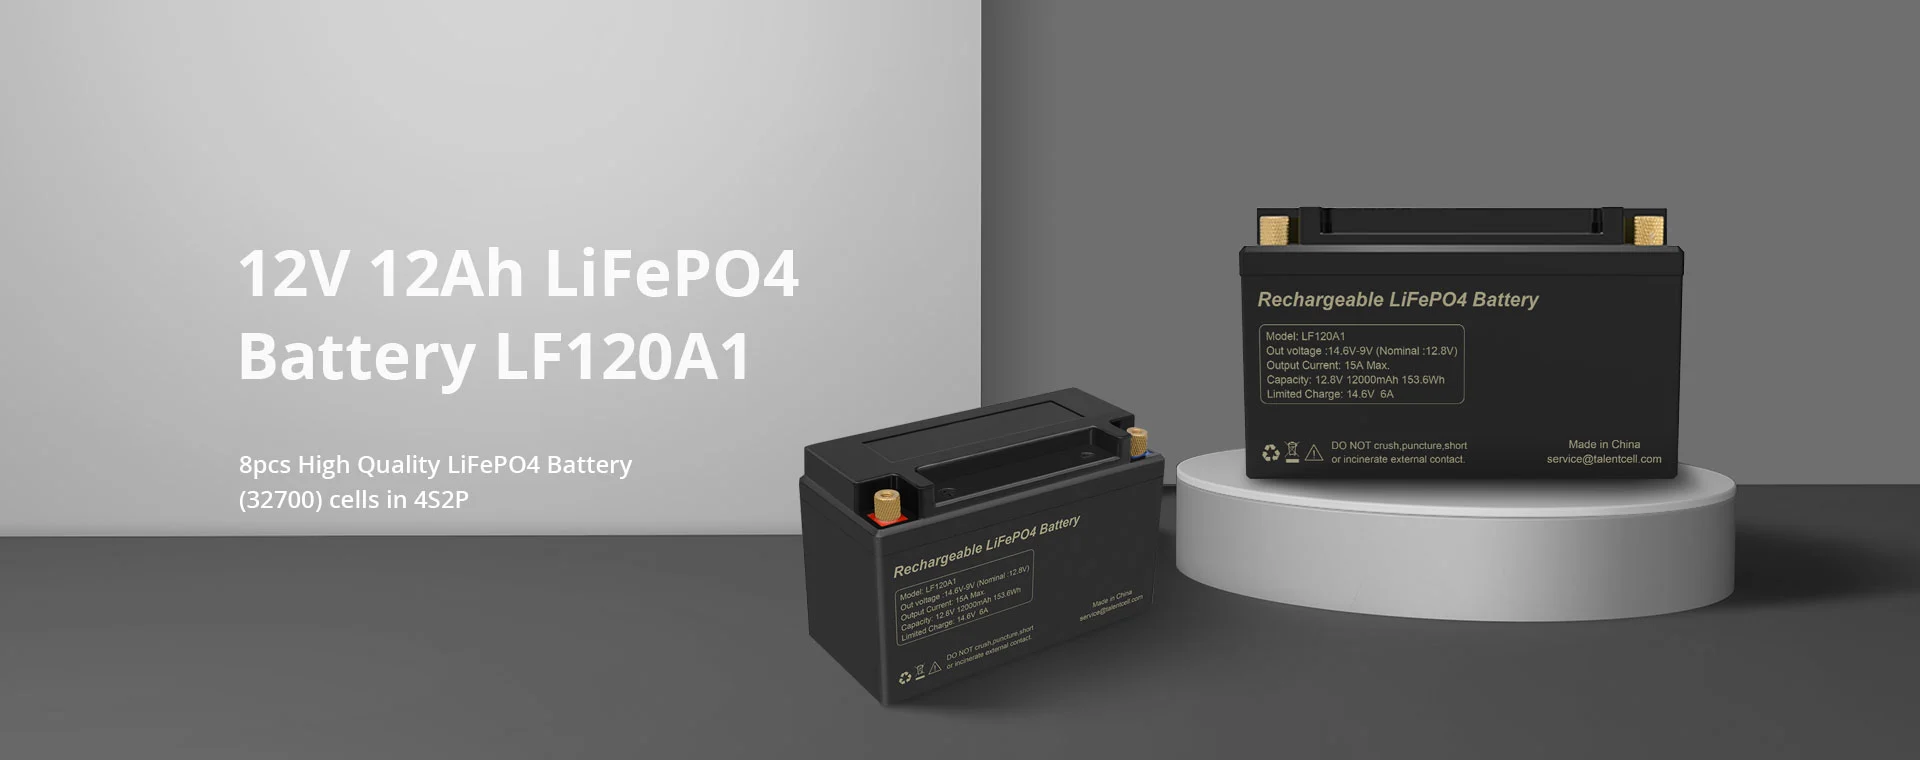 6V 6Ah LiFePO4 Battery